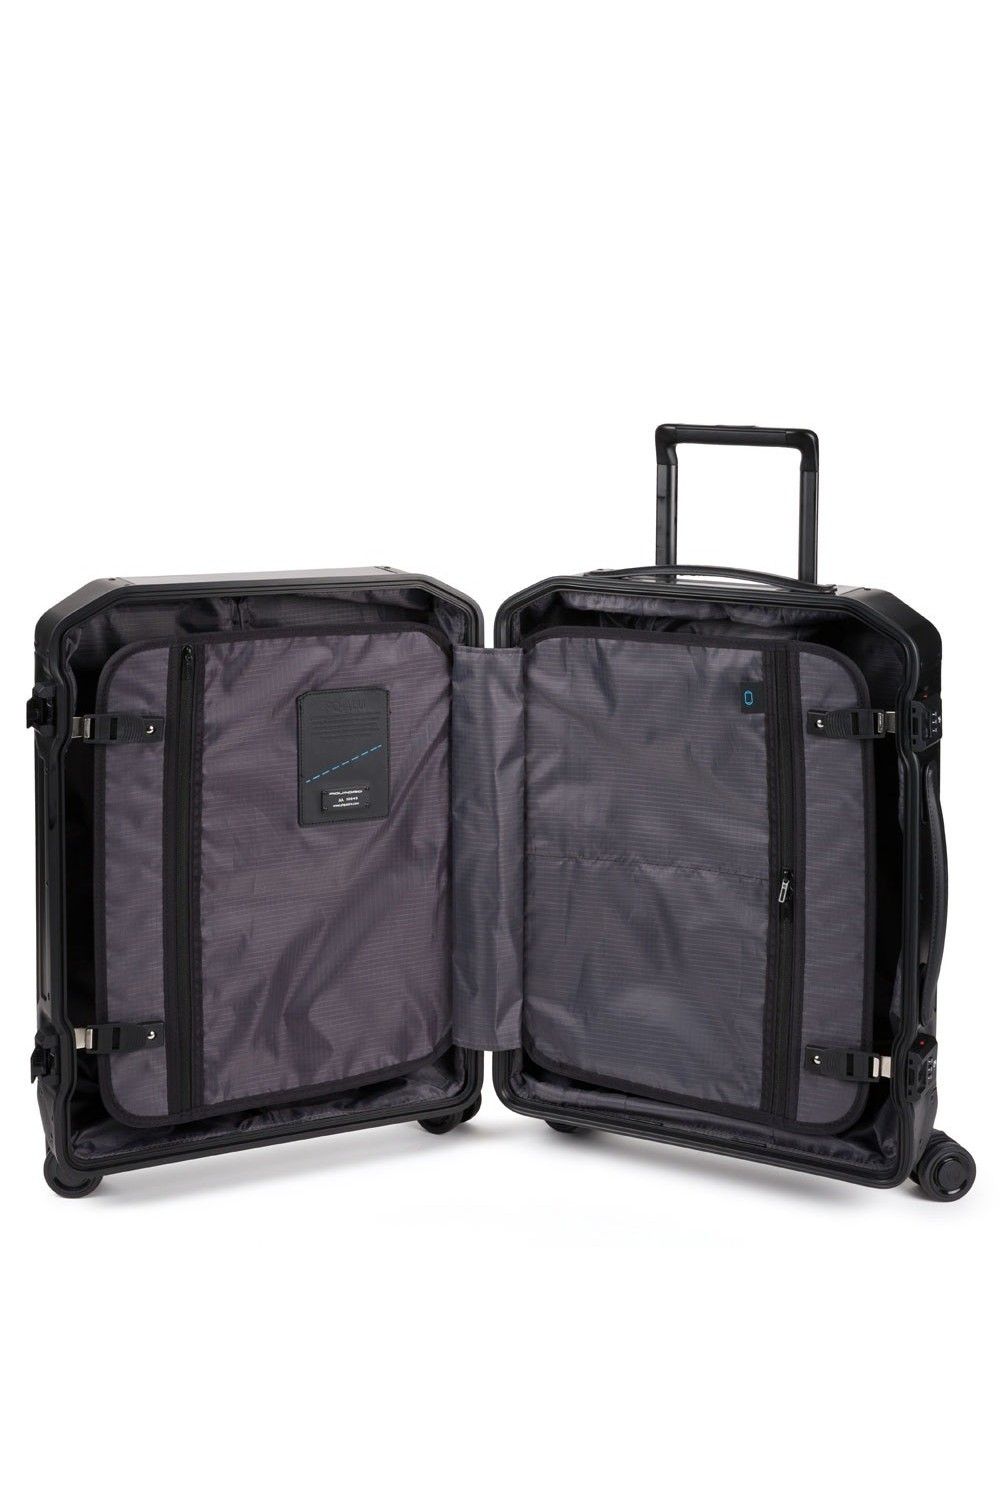 Valise aluminium Collezione Piquadro 55cm 4 roues bagage à main